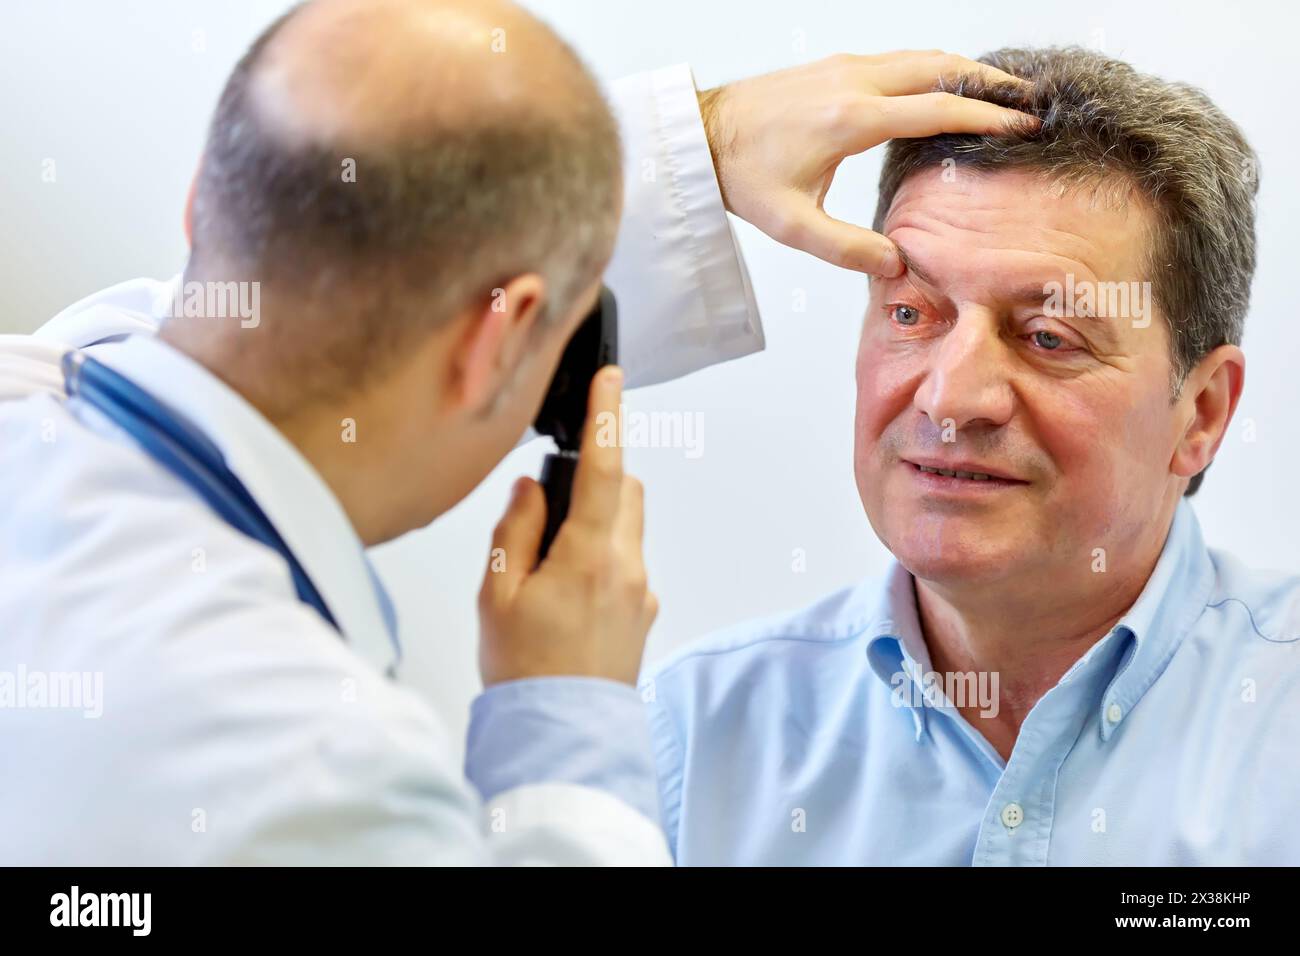 Examen de la vue, une consultation médicale ambulatoire, Lezo, Gipuzkoa, Pays Basque, Espagne Banque D'Images